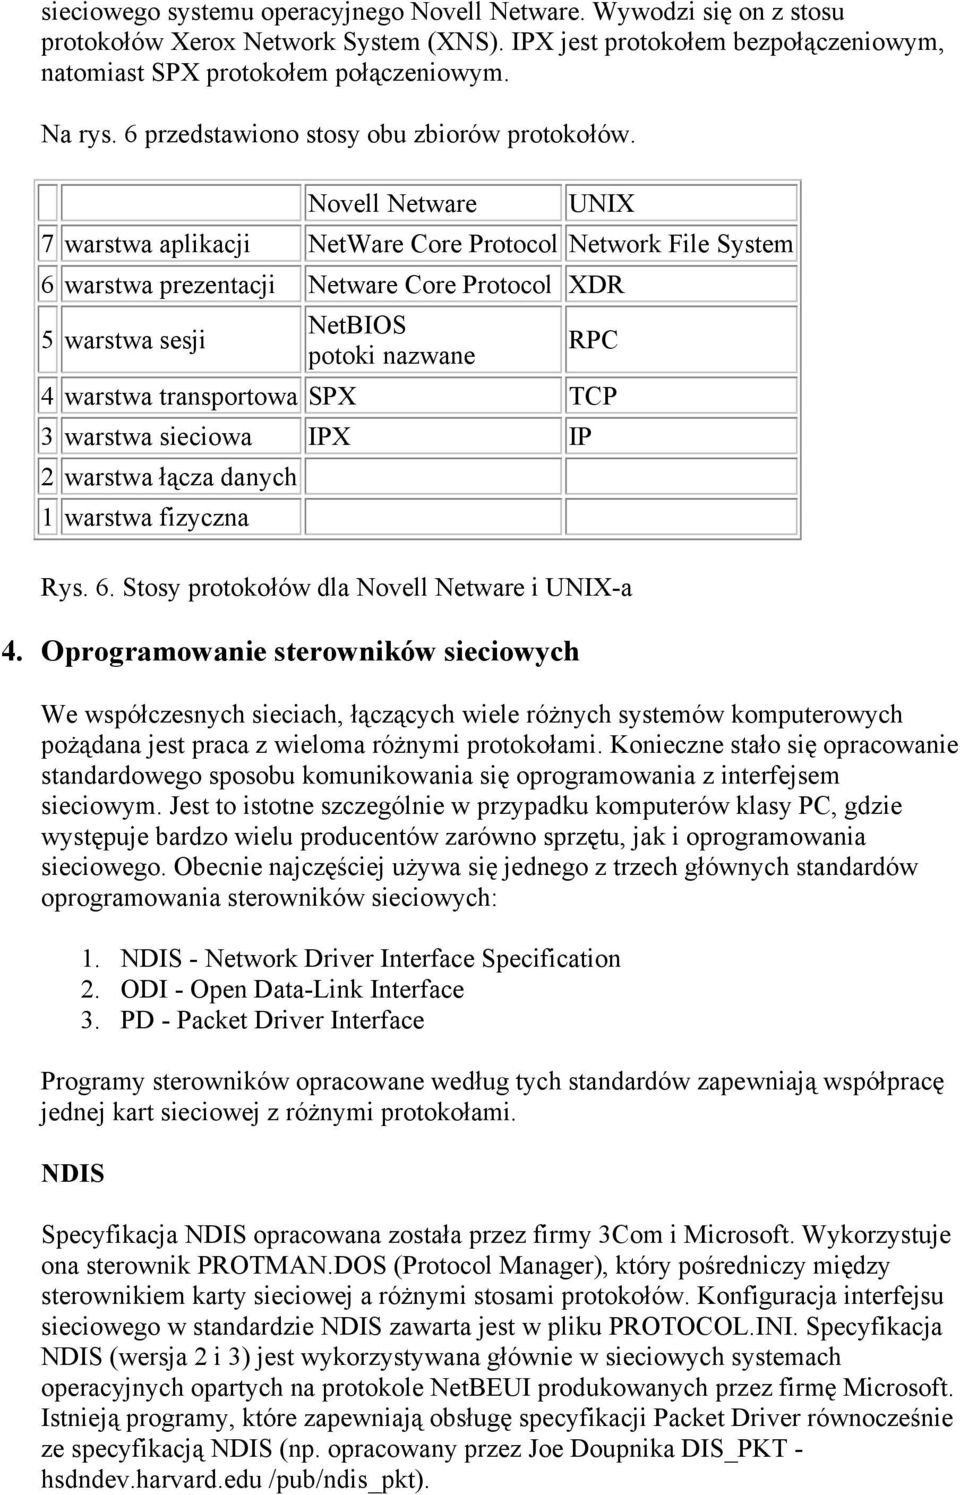 Novell Netware UNIX 7 warstwa aplikacji NetWare Core Protocol Network File System 6 warstwa prezentacji Netware Core Protocol XDR 5 warstwa sesji NetBIOS potoki nazwane RPC 4 warstwa transportowa SPX